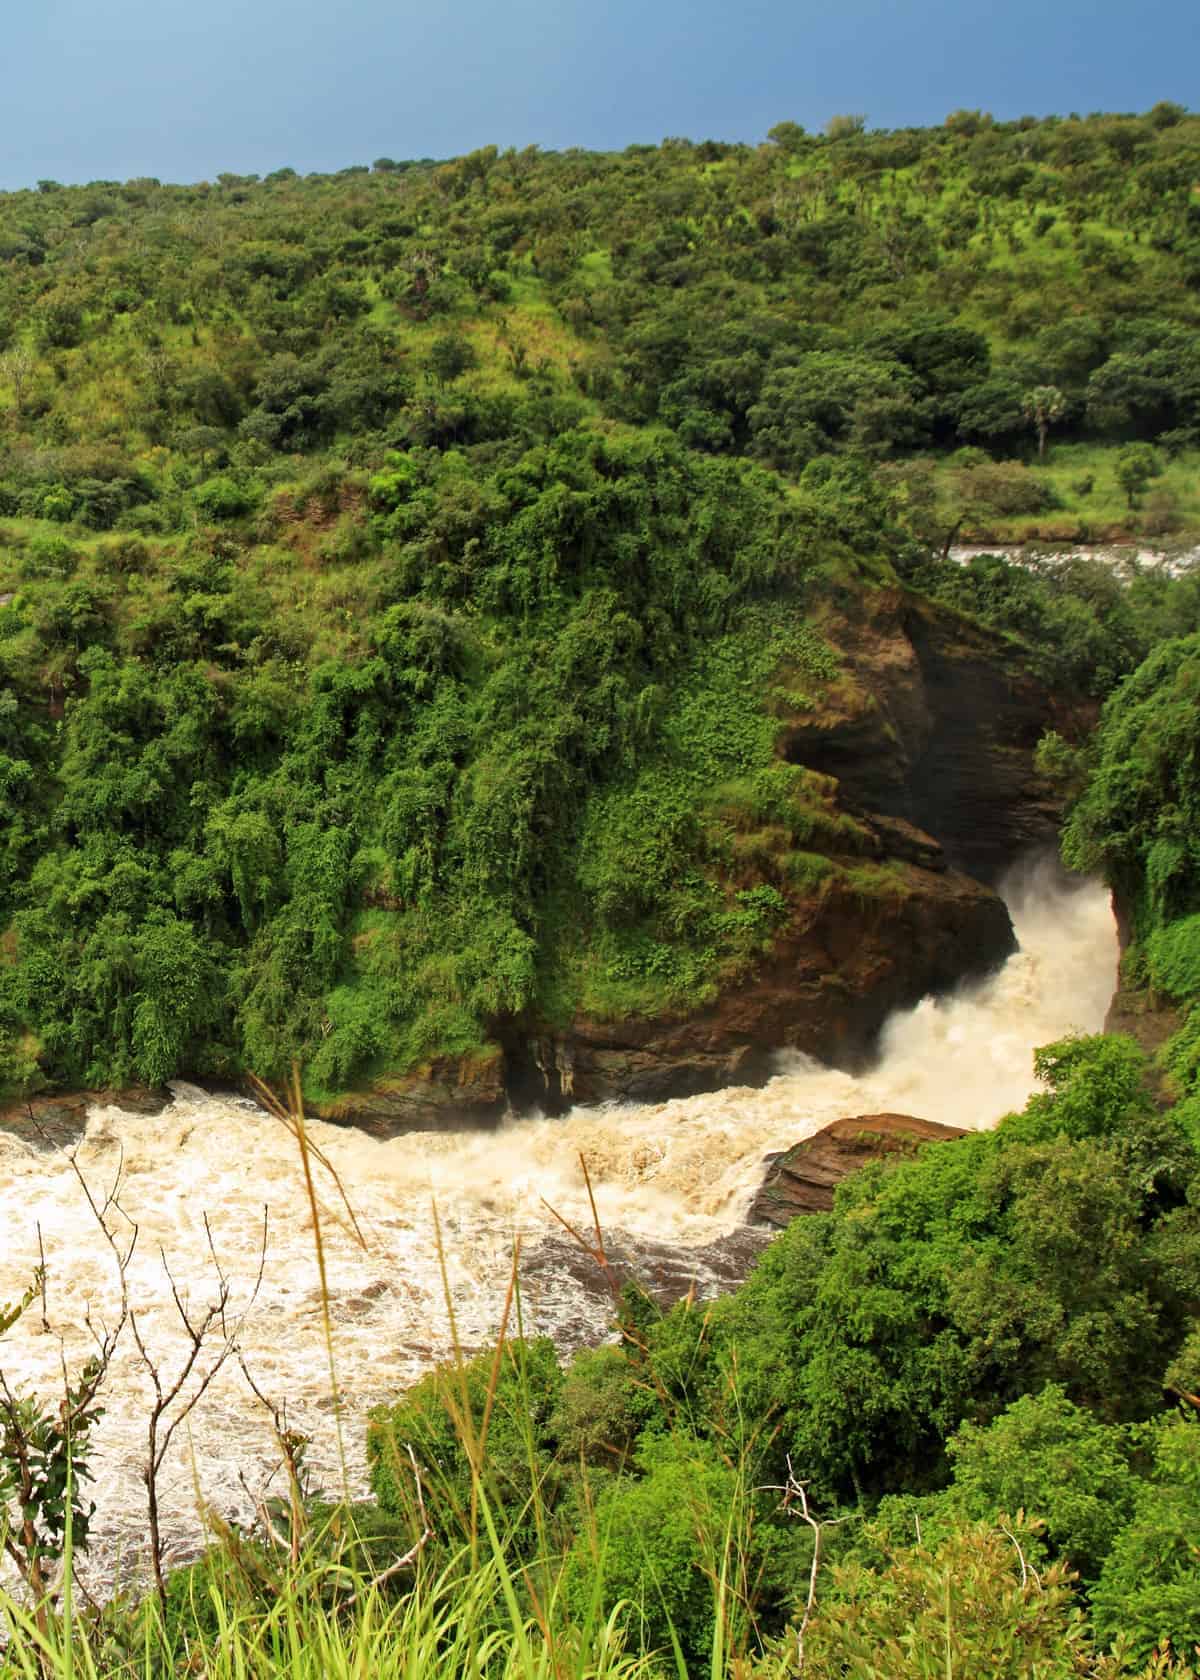 Murchison Falls location in Uganda